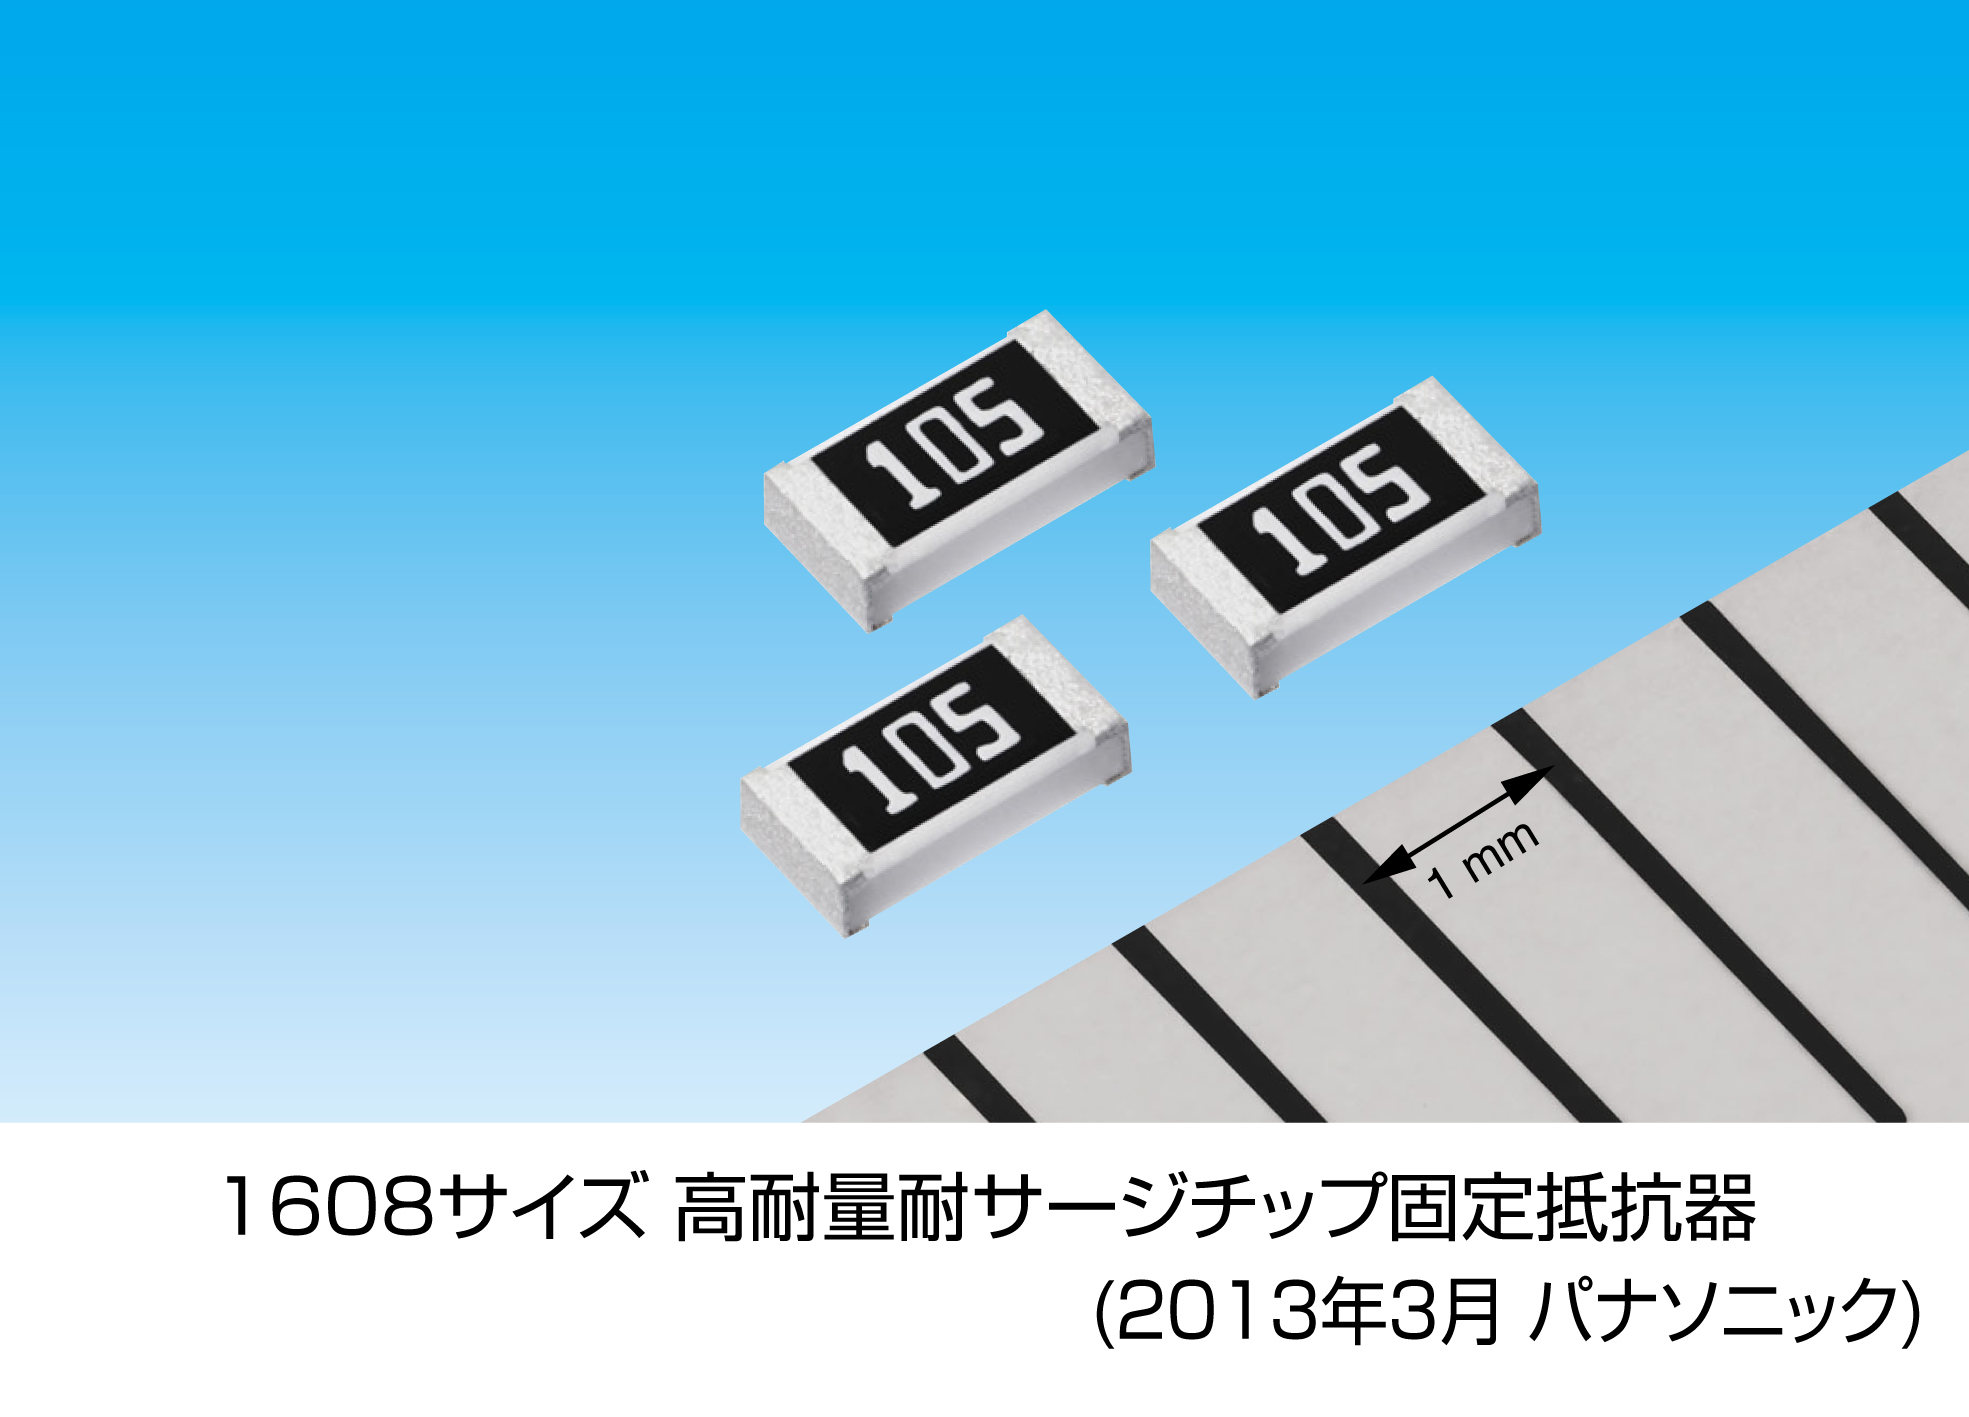 1608サイズ 高耐量耐サージチップ固定抵抗器を製品化 パナソニックのプレスリリース